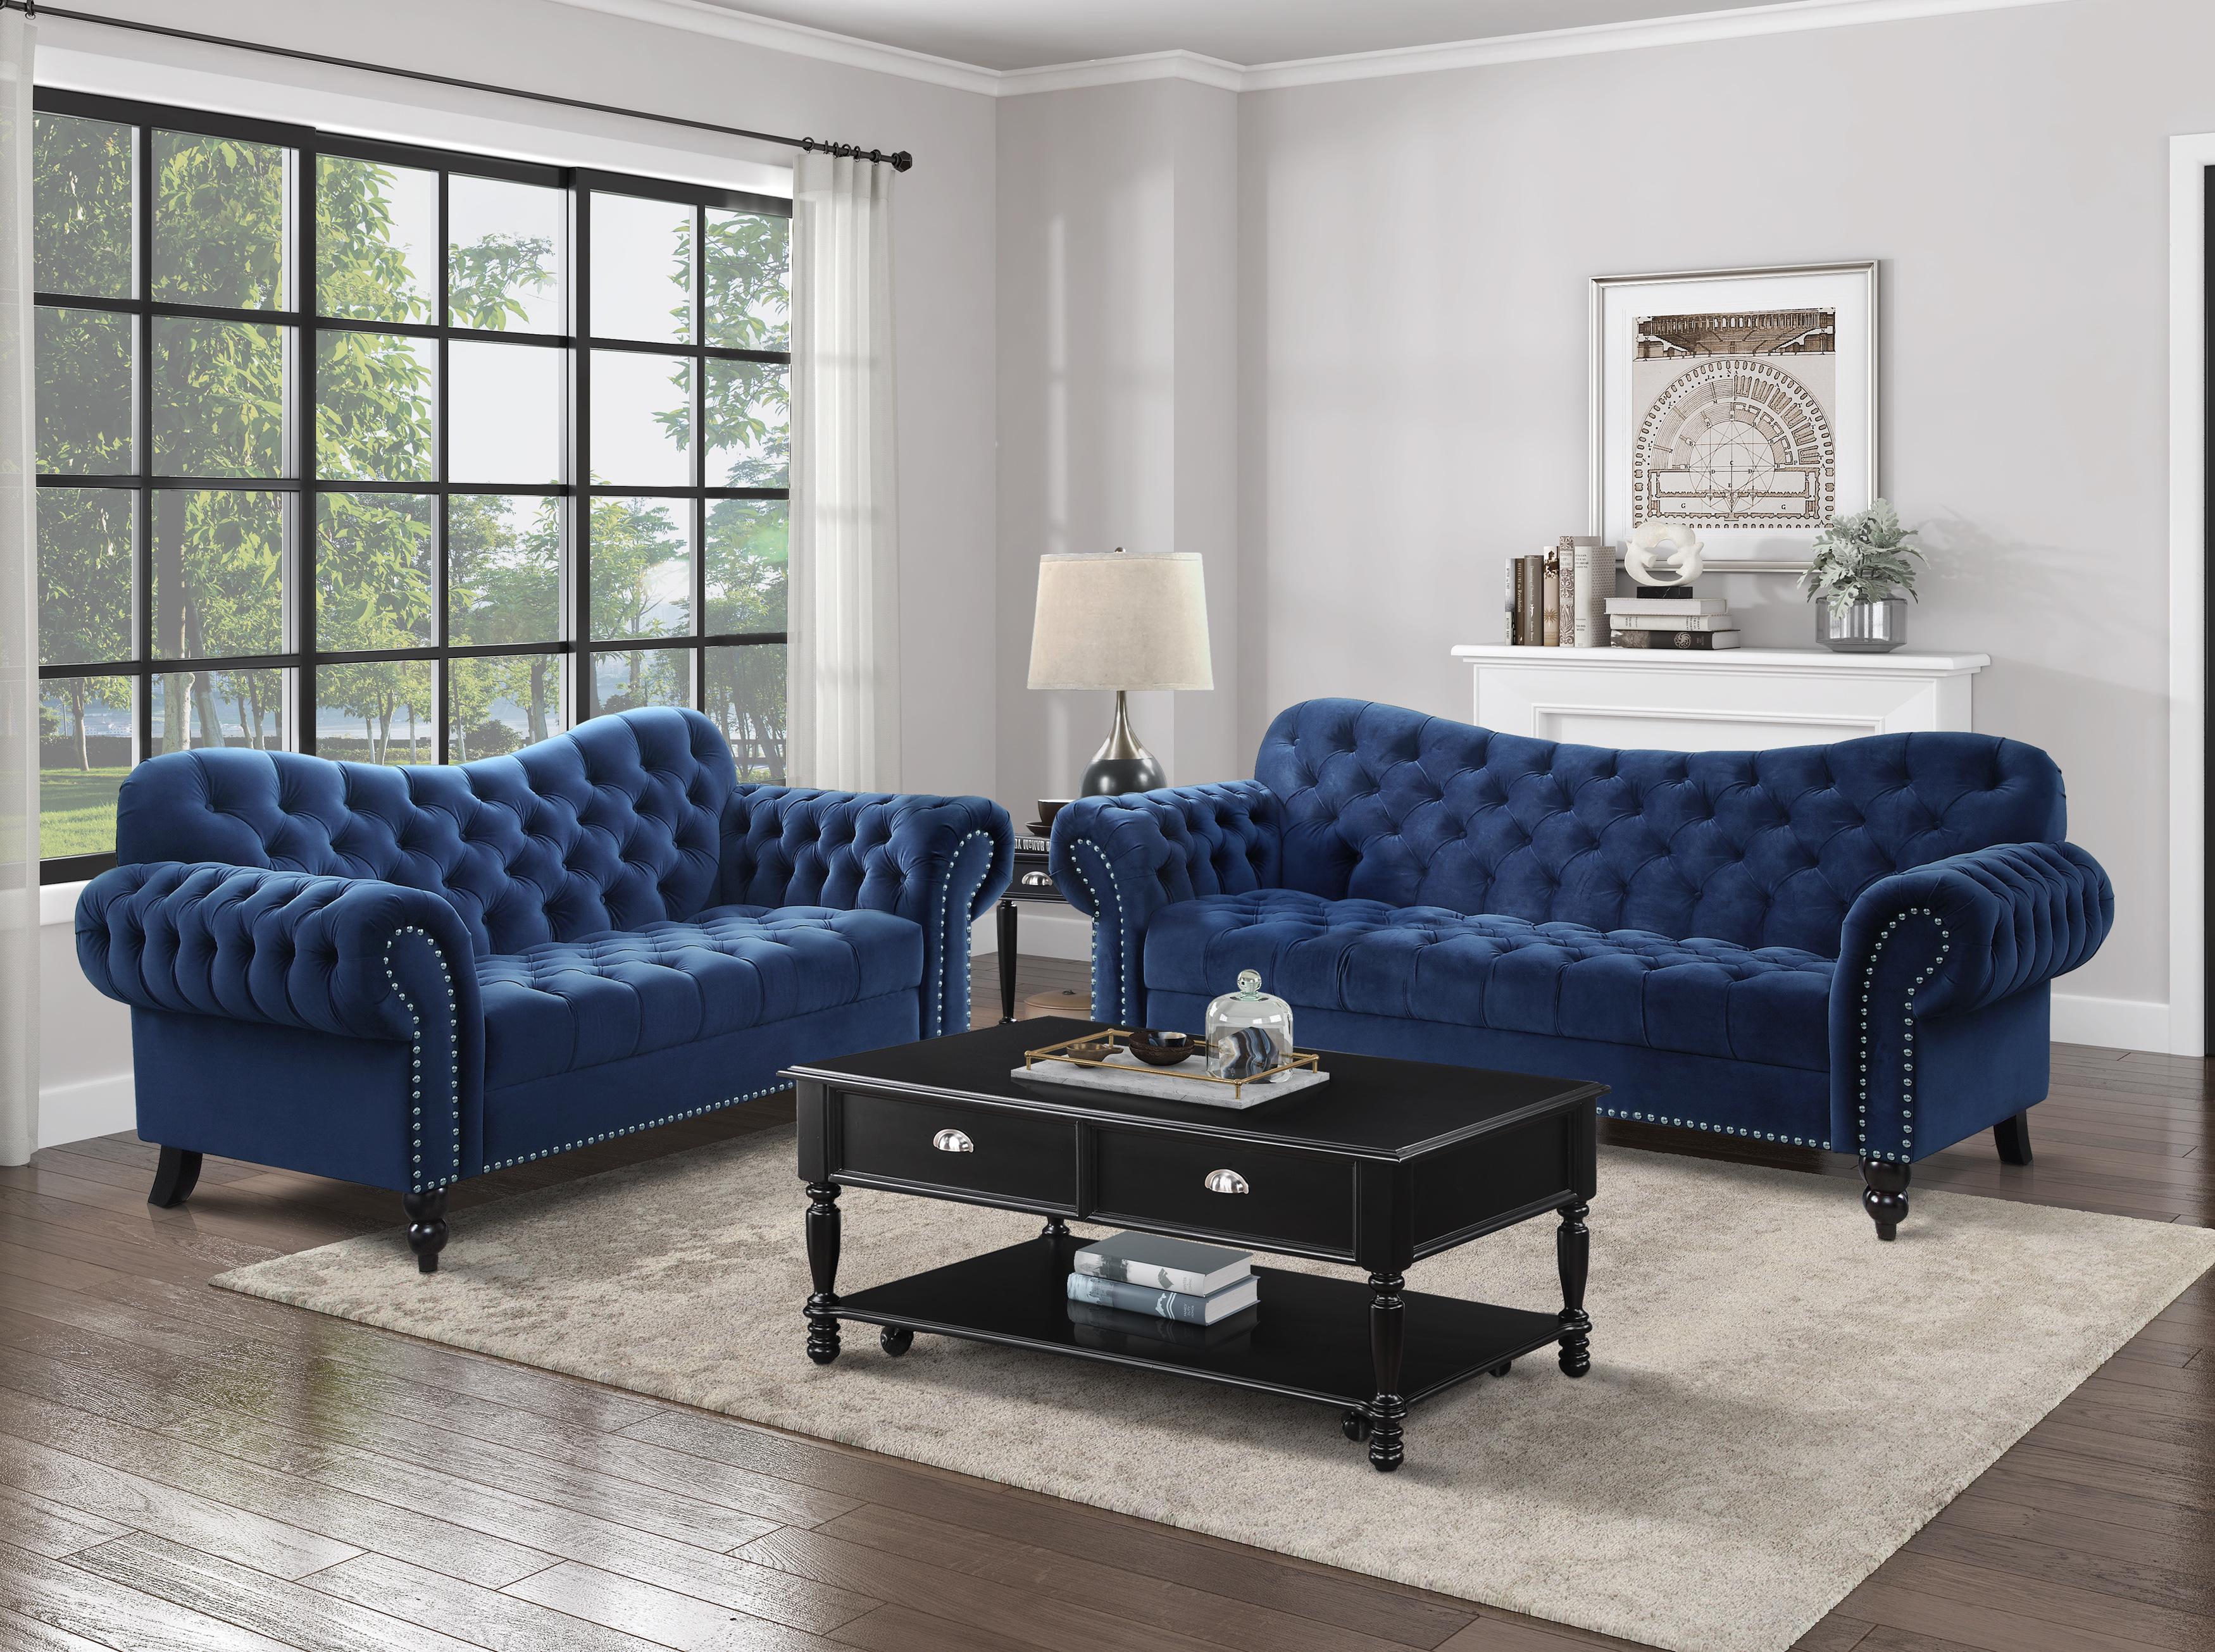 

    
Glam Navy Blue Velvet Living Room Set 2pcs Homelegance 9330BU Rosalie
